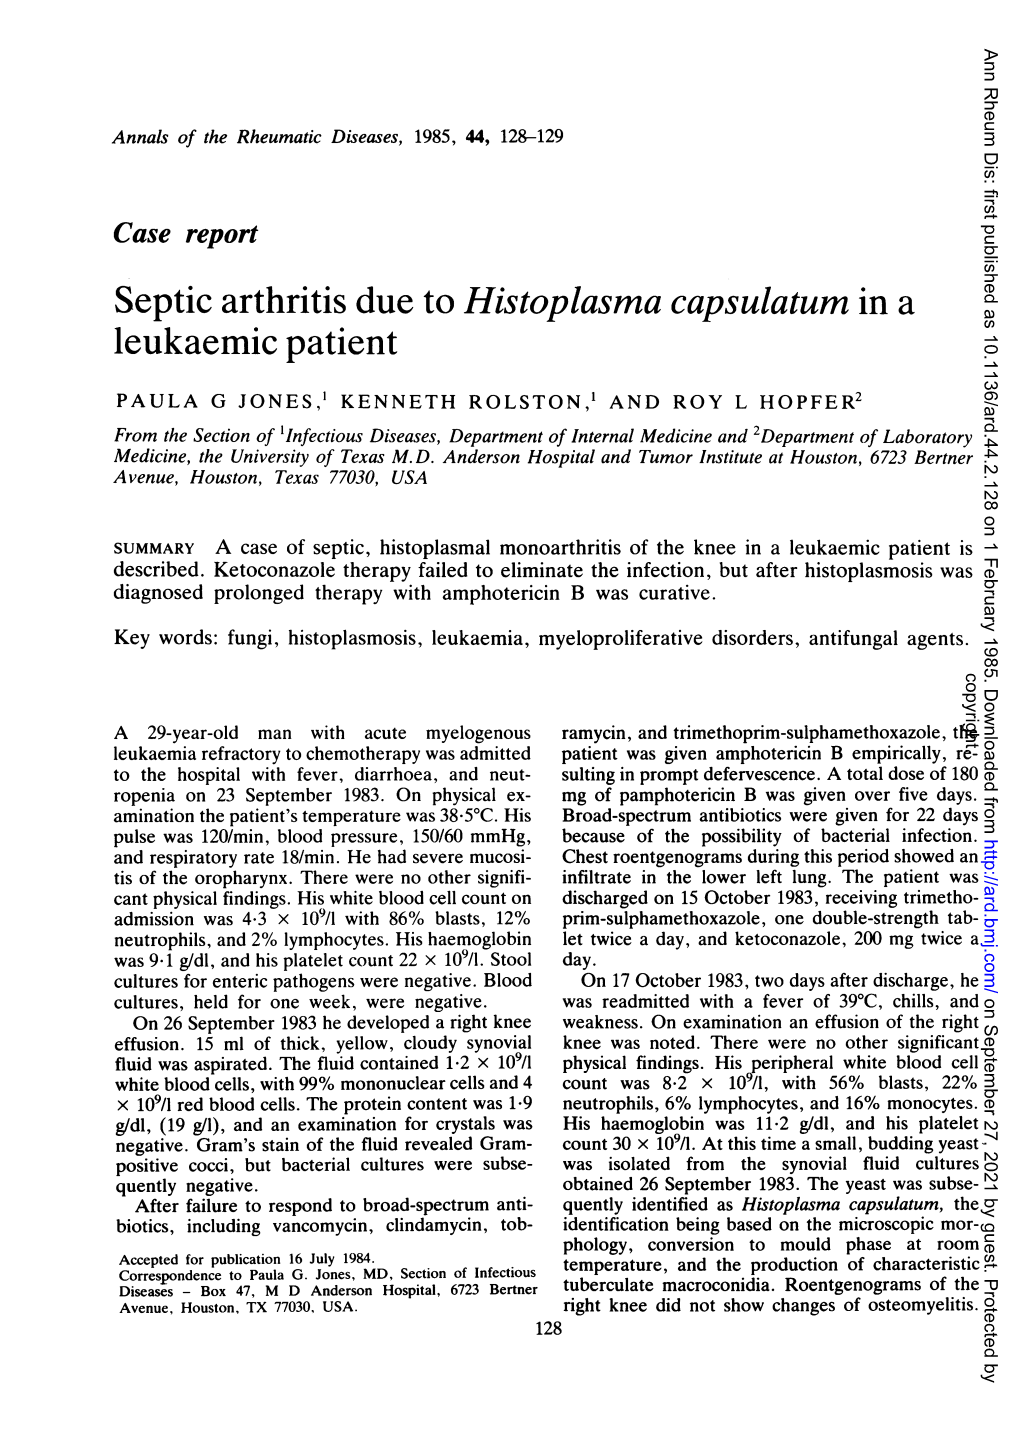 Septic Arthritis Due to Histoplasma Capsulatum in a Leukaemic Patient